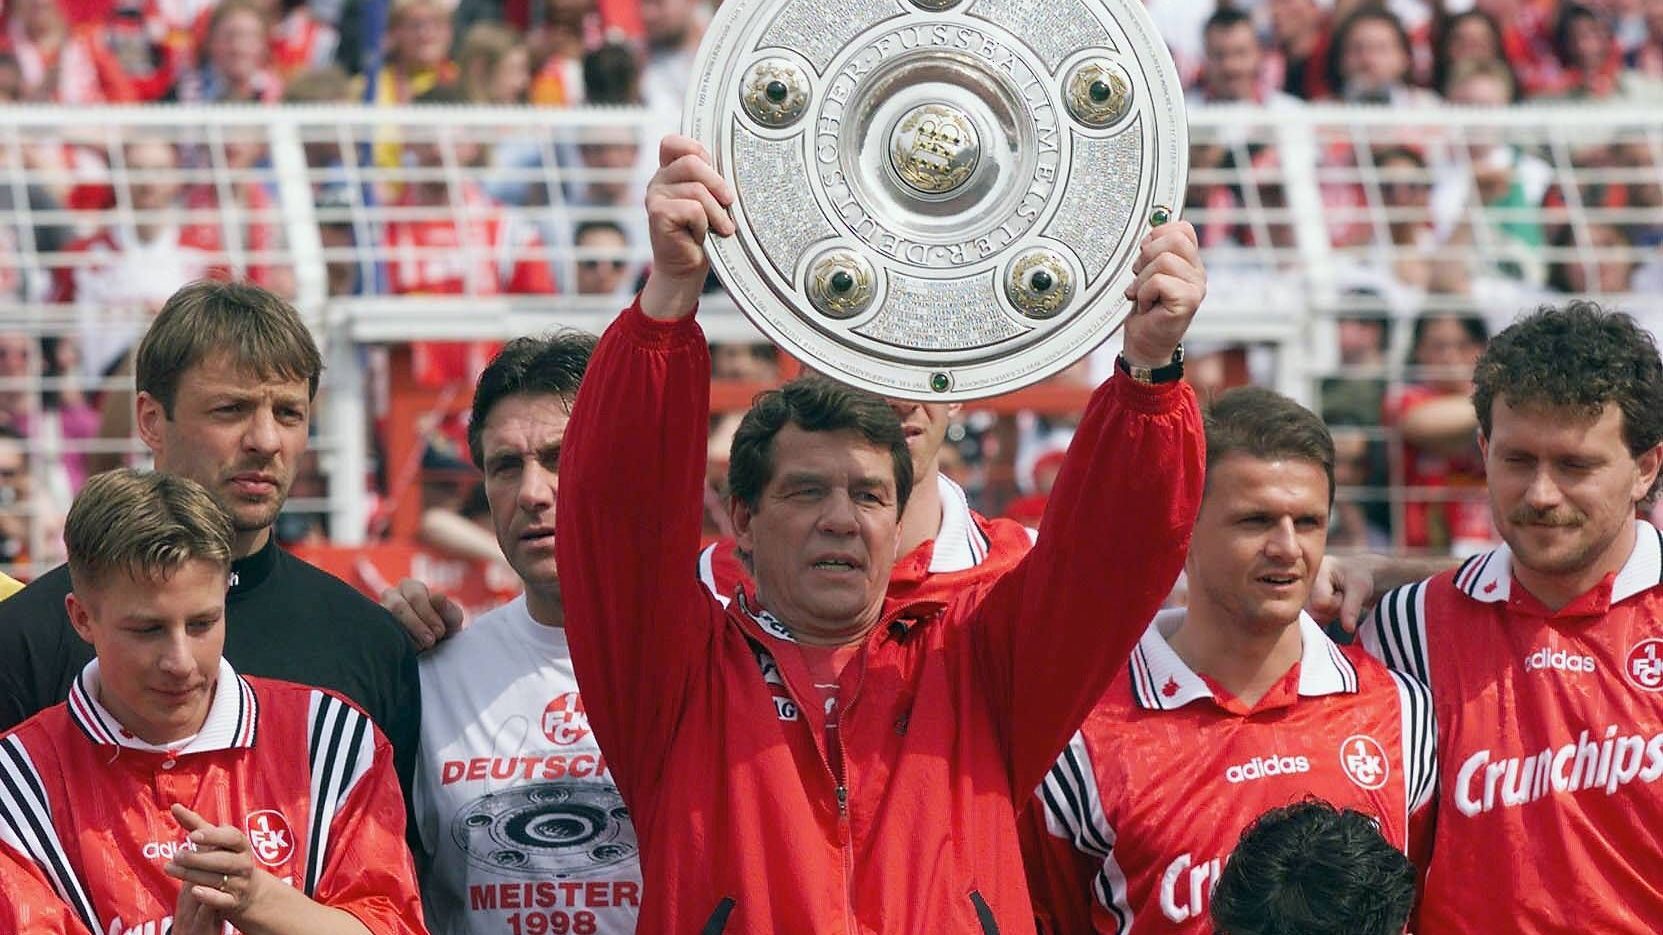 <strong>Otto Rehhagel (Karriereende)</strong><br>Seine Zeit beim FC Bayern hielt nicht einmal eine komplette Saison. Wegen persönlicher Differenzen im Verein, hieß es später. Für Rehhagel folgte eine erfolgreiche Zeit. Mit Absteiger Kaiserslautern schaffte er den Aufstieg und wurde unmittelbar danach Meister 1997/98. Weil sich der FCK nicht in der europäischen Spitze etablieren konnte, kippte die Stimmung,. Im Herbst 2000 warf Rehhagel hin.